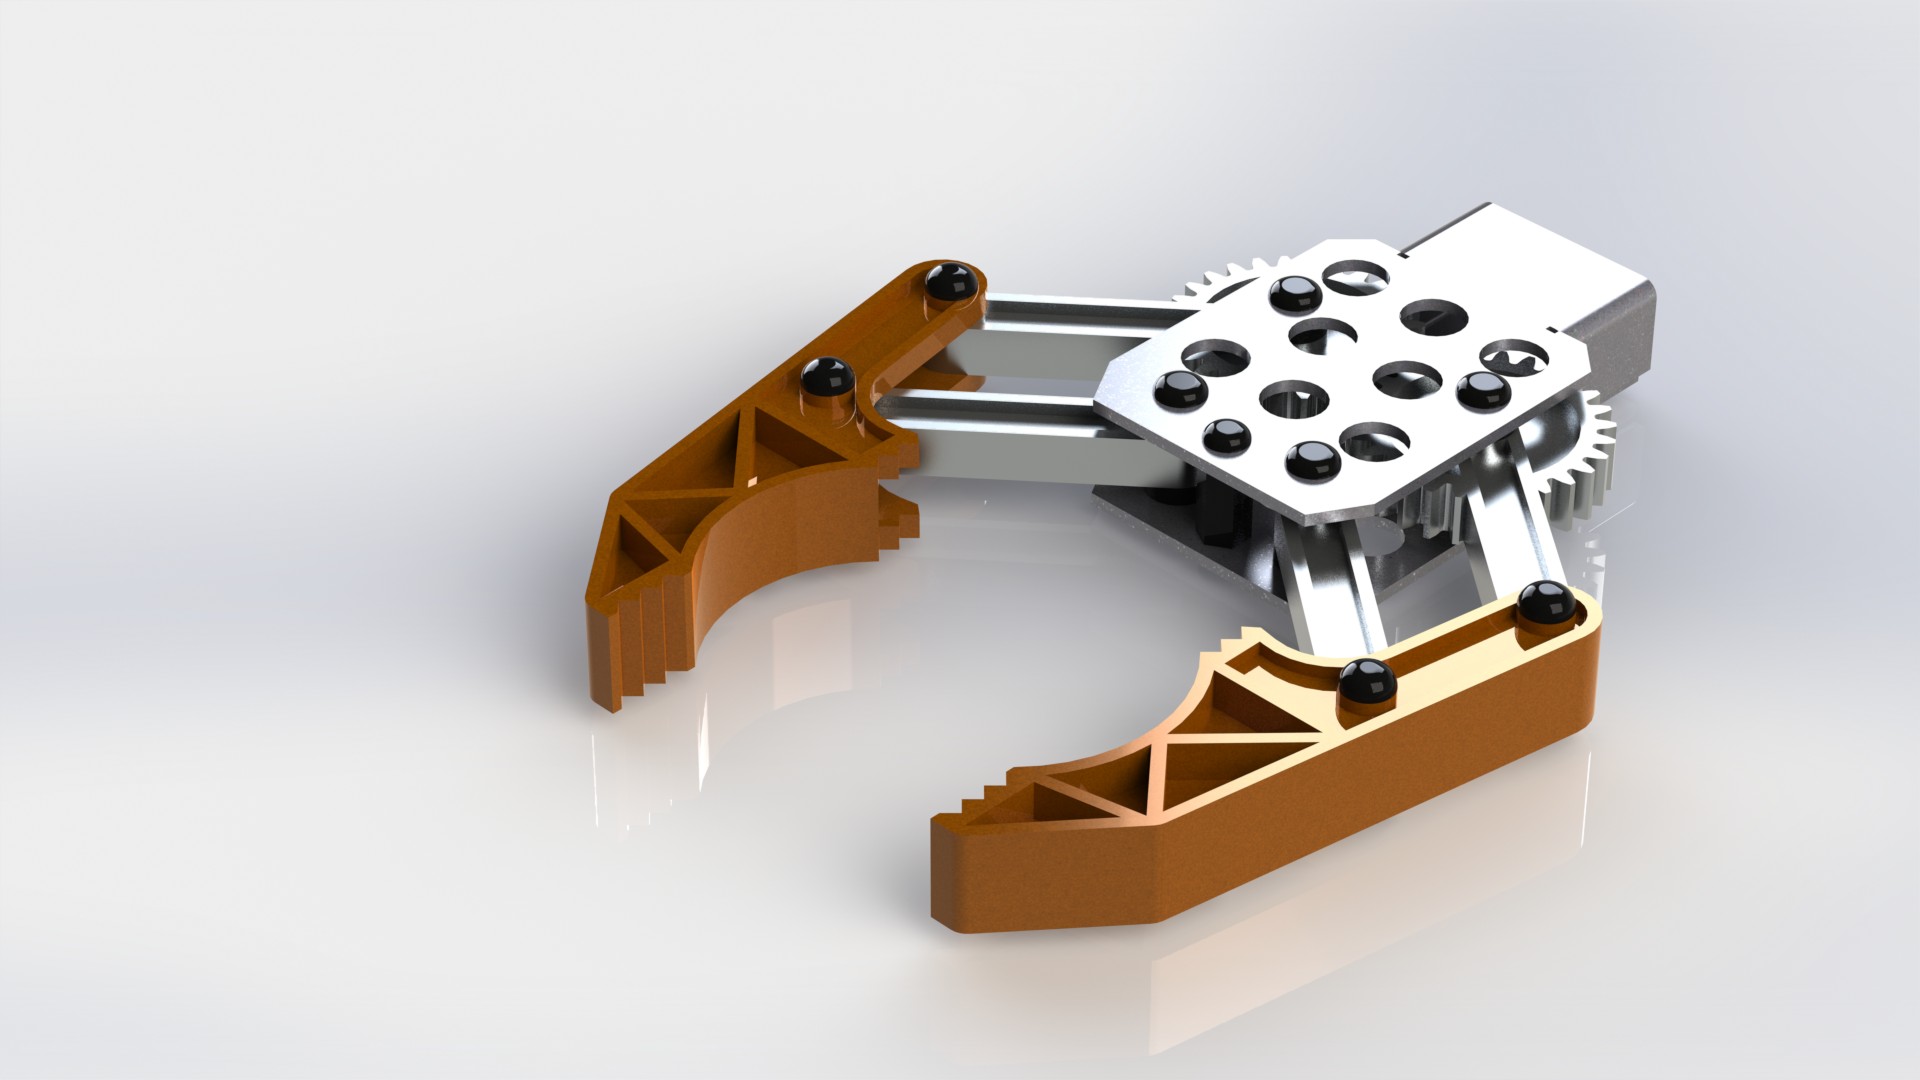 دانلود پروژه طراحی گریپر ربات Robot gripper